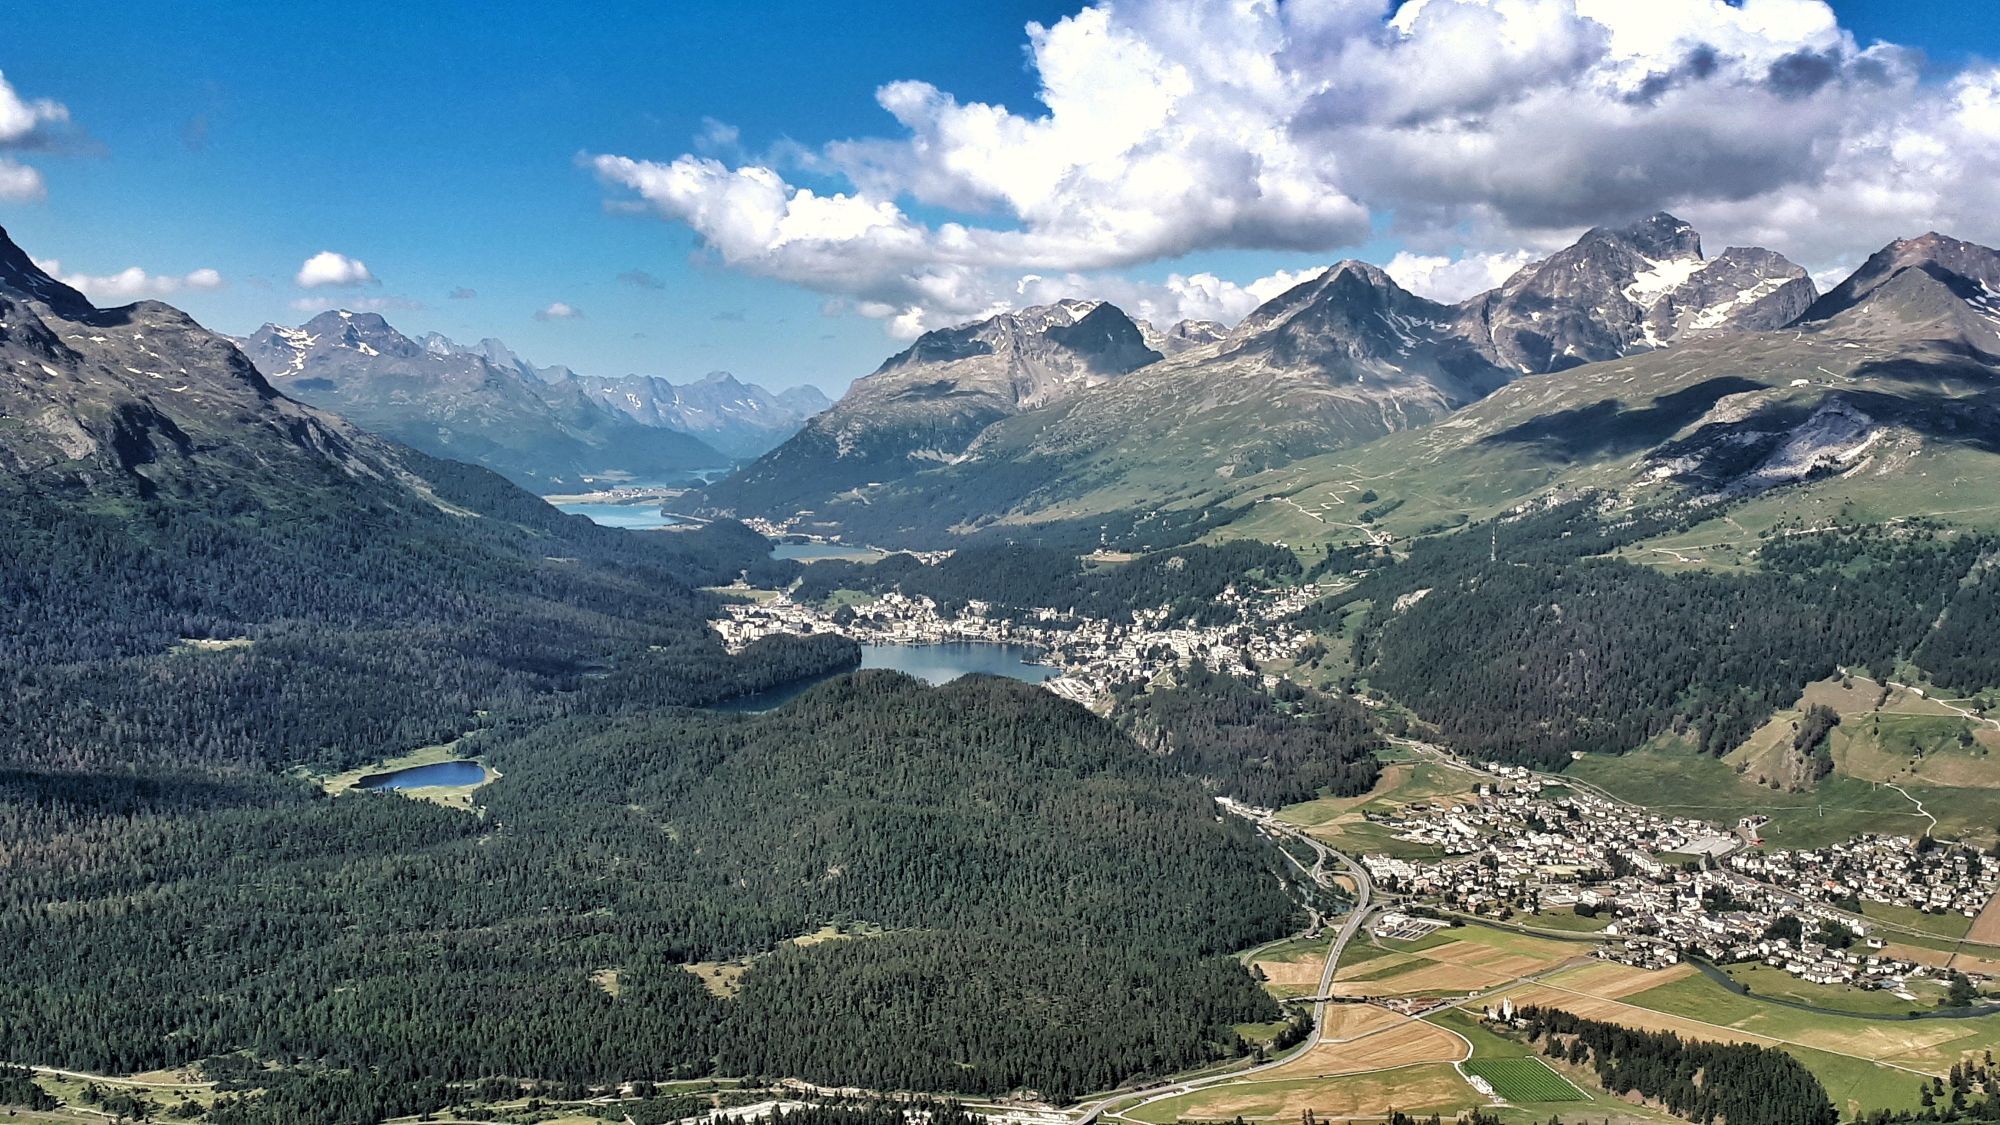 Widok na dolinę Engadyny z St. Moritz i jeziorami (fot. Paweł Klimek)